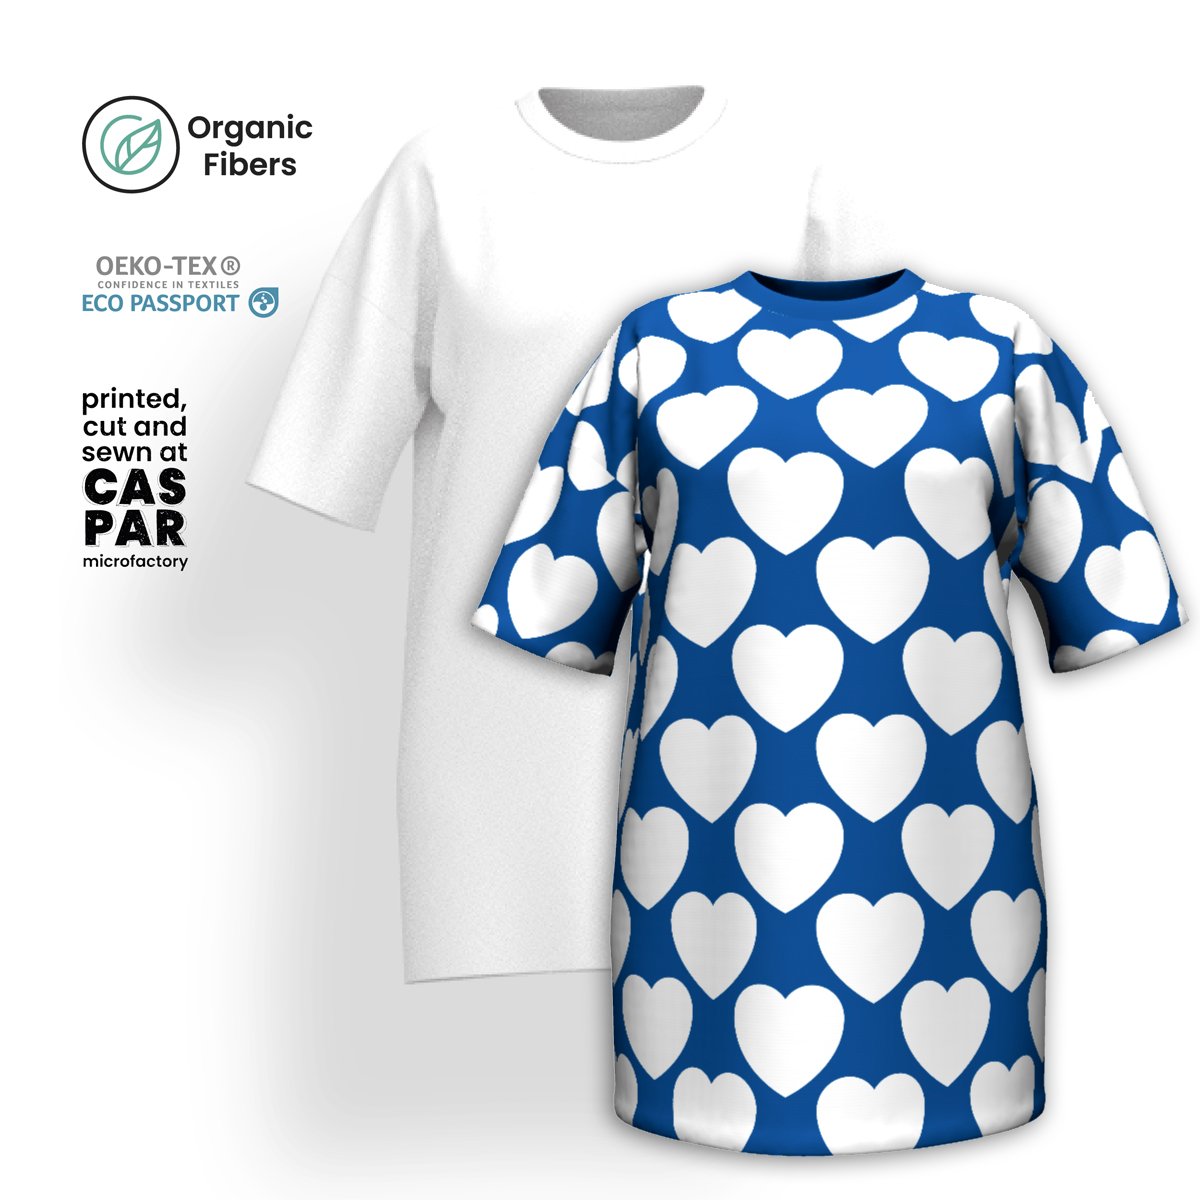 ELLIE LOVE fin - T-shirt dress (organic cotton)